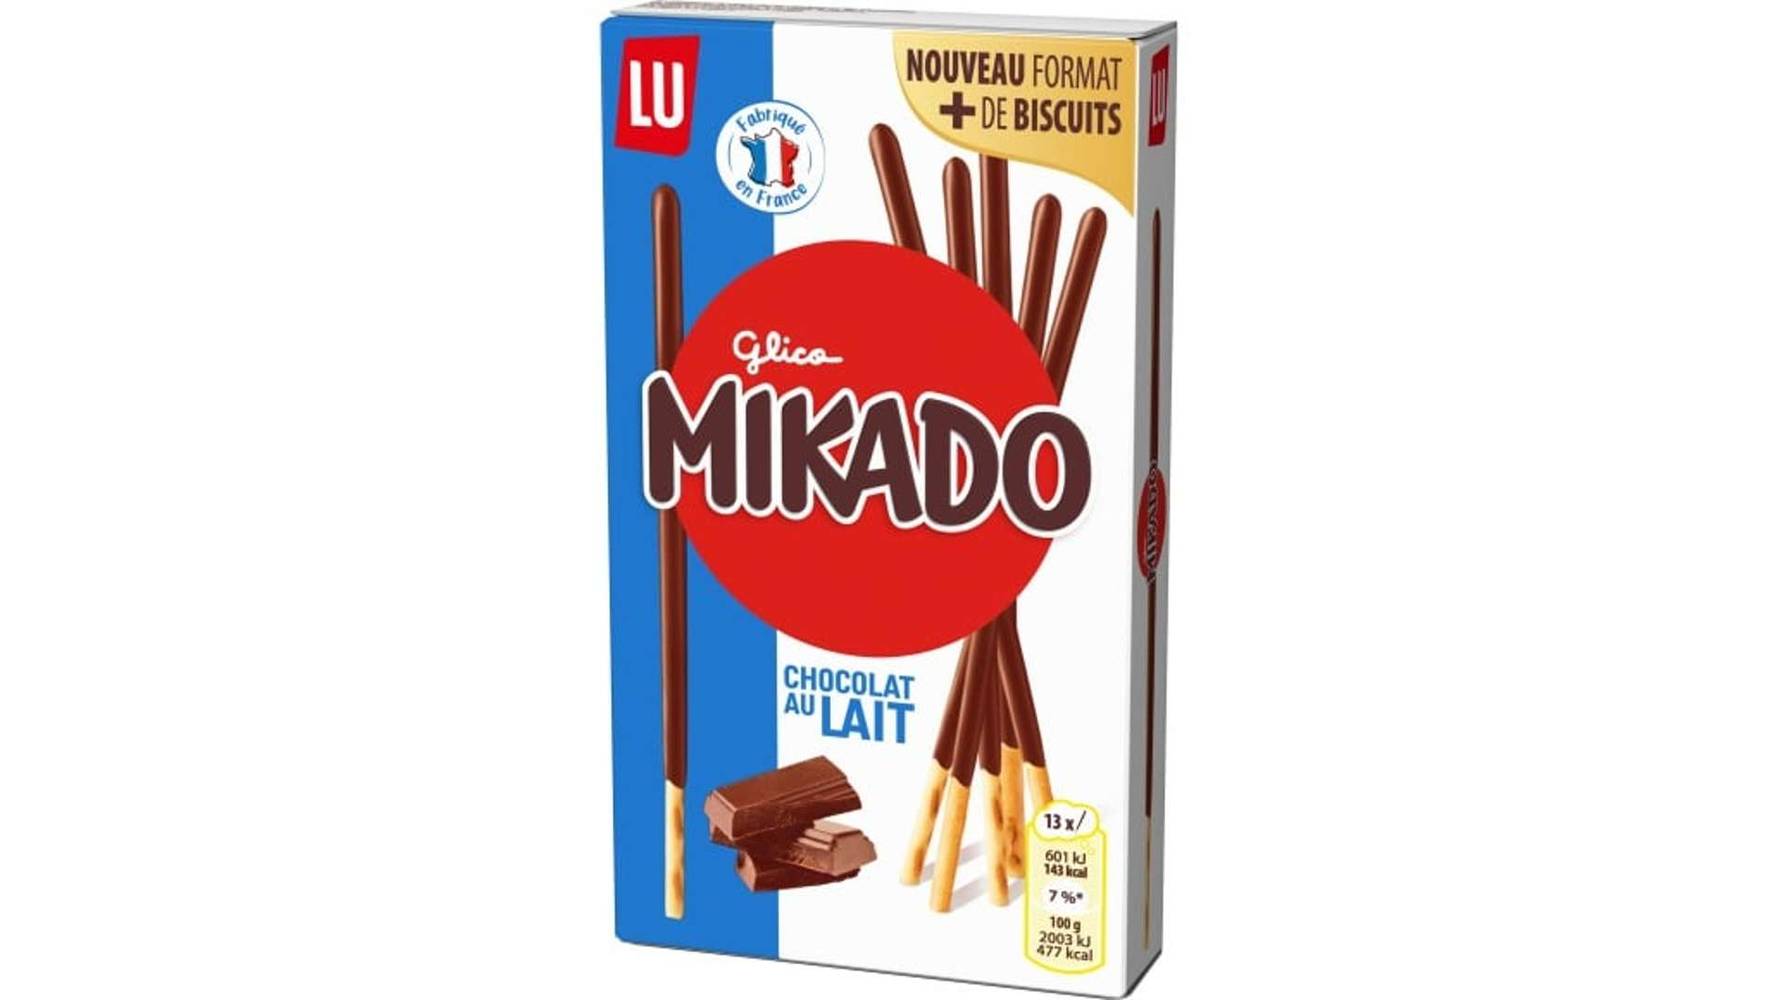 Lu Mikado chocolat au lait Le paquet de 100g